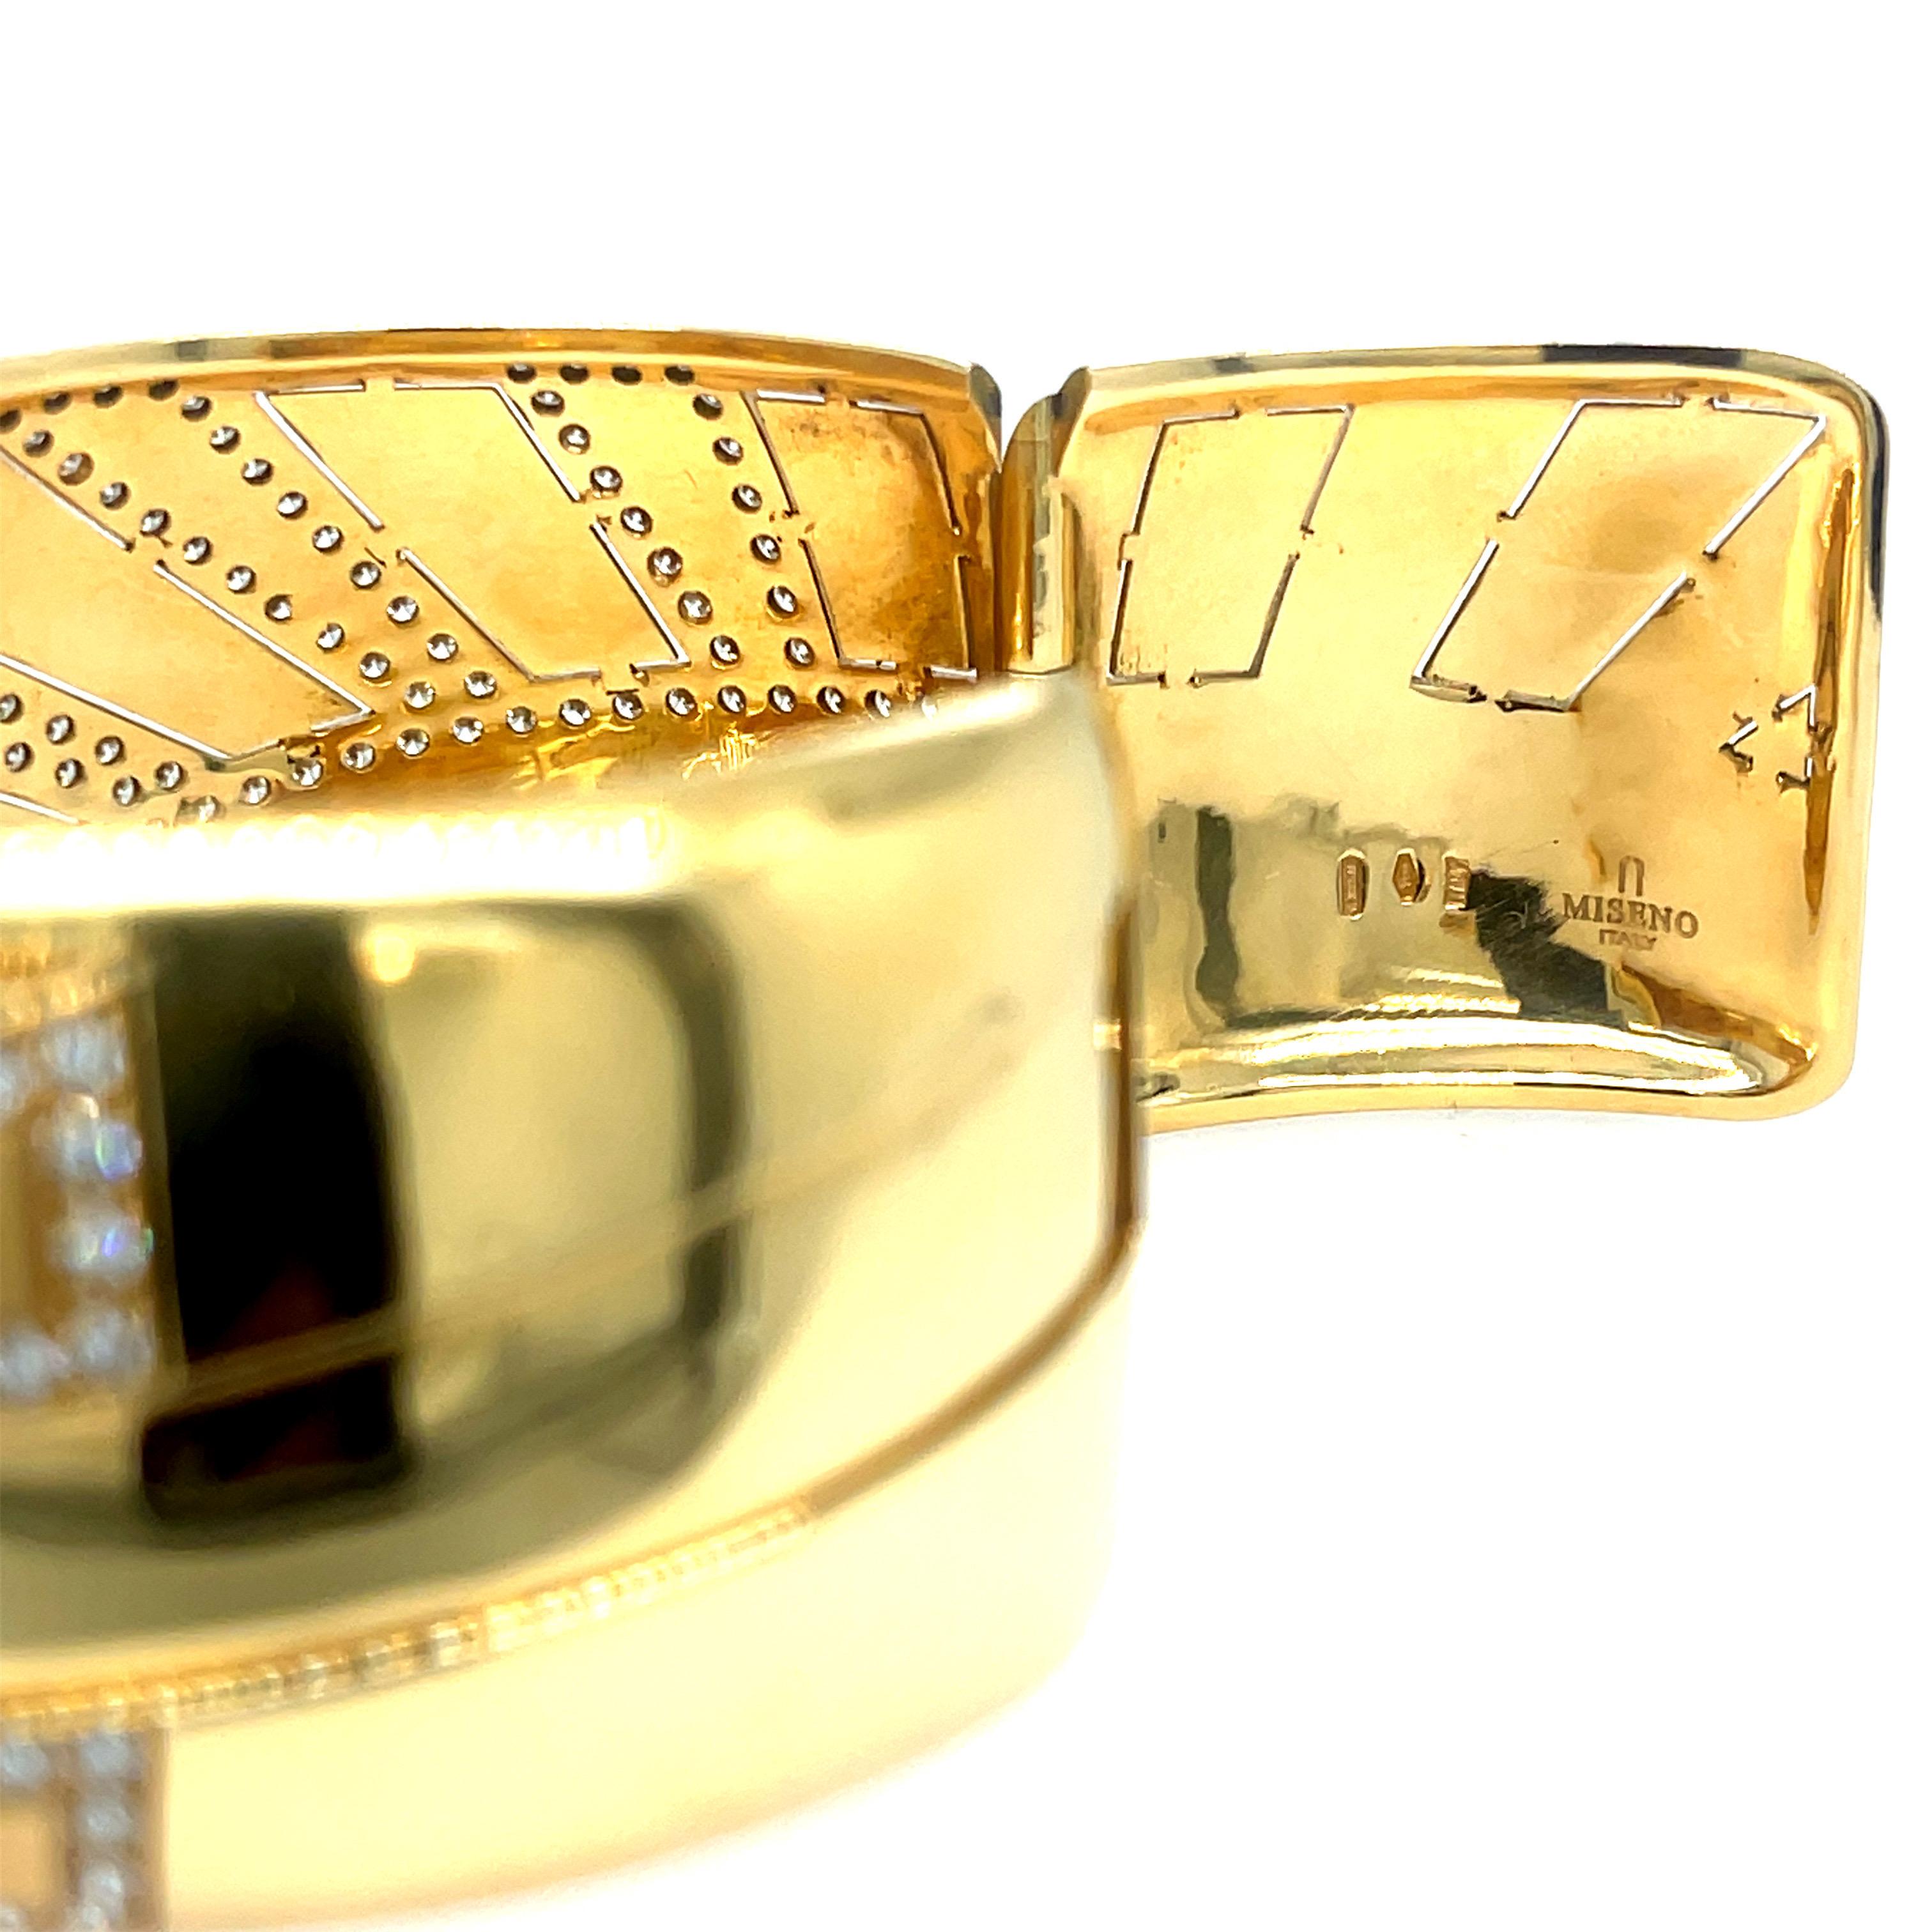 Manchette large à diamants Miseno en or jaune 18K. Cette manchette présente 5,32ctw de diamants ronds sertis dans un motif représentant les rayons du soleil.

83 grammes
1